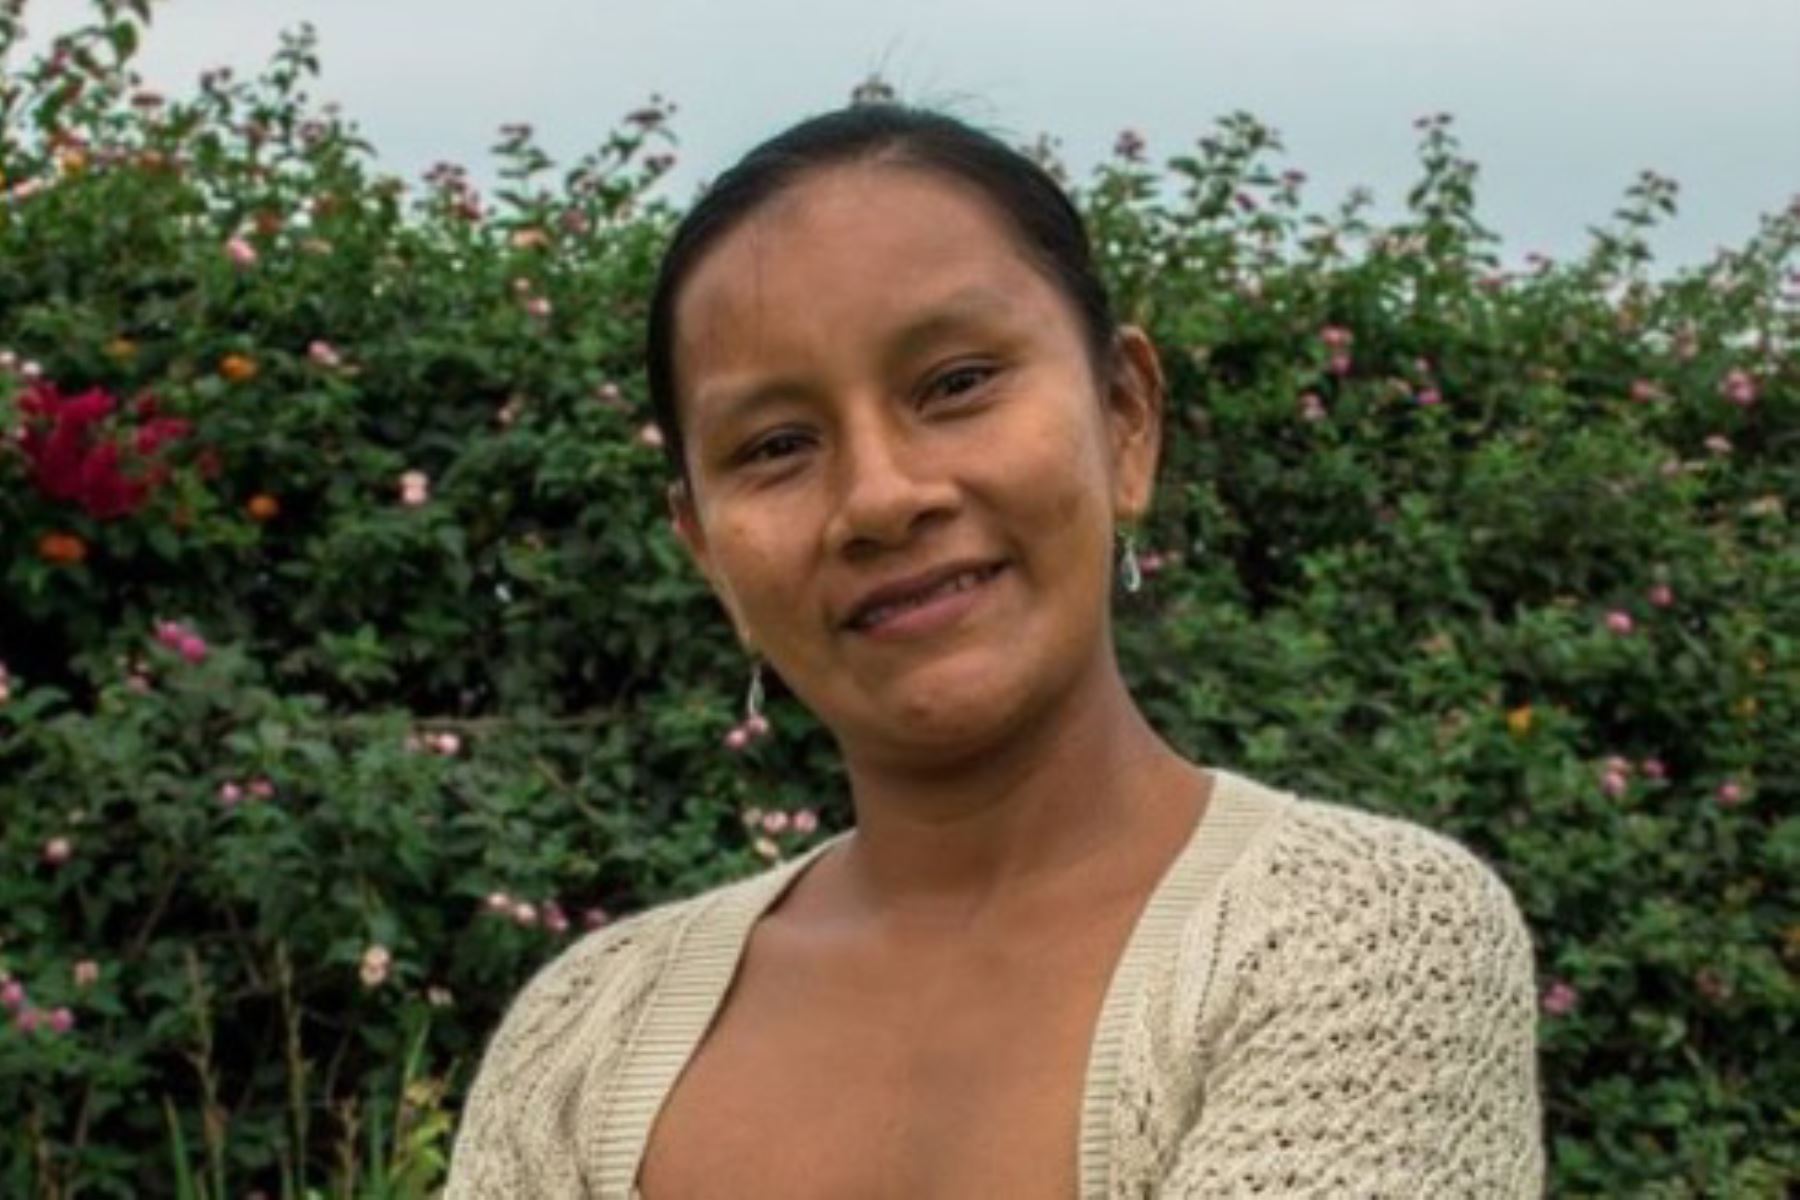 Su trabajo en favor de la seguridad territorial de las comunidades indígenas, mediante la creación del Parque Nacional Yaguas, llevó a Liz Chicaje Churay a obtener el Premio Franco-Alemán de Derechos Humanos y Estado de Derecho 2019. Conoce a esta lideresa de la etnia bora que enorgullece al Perú.